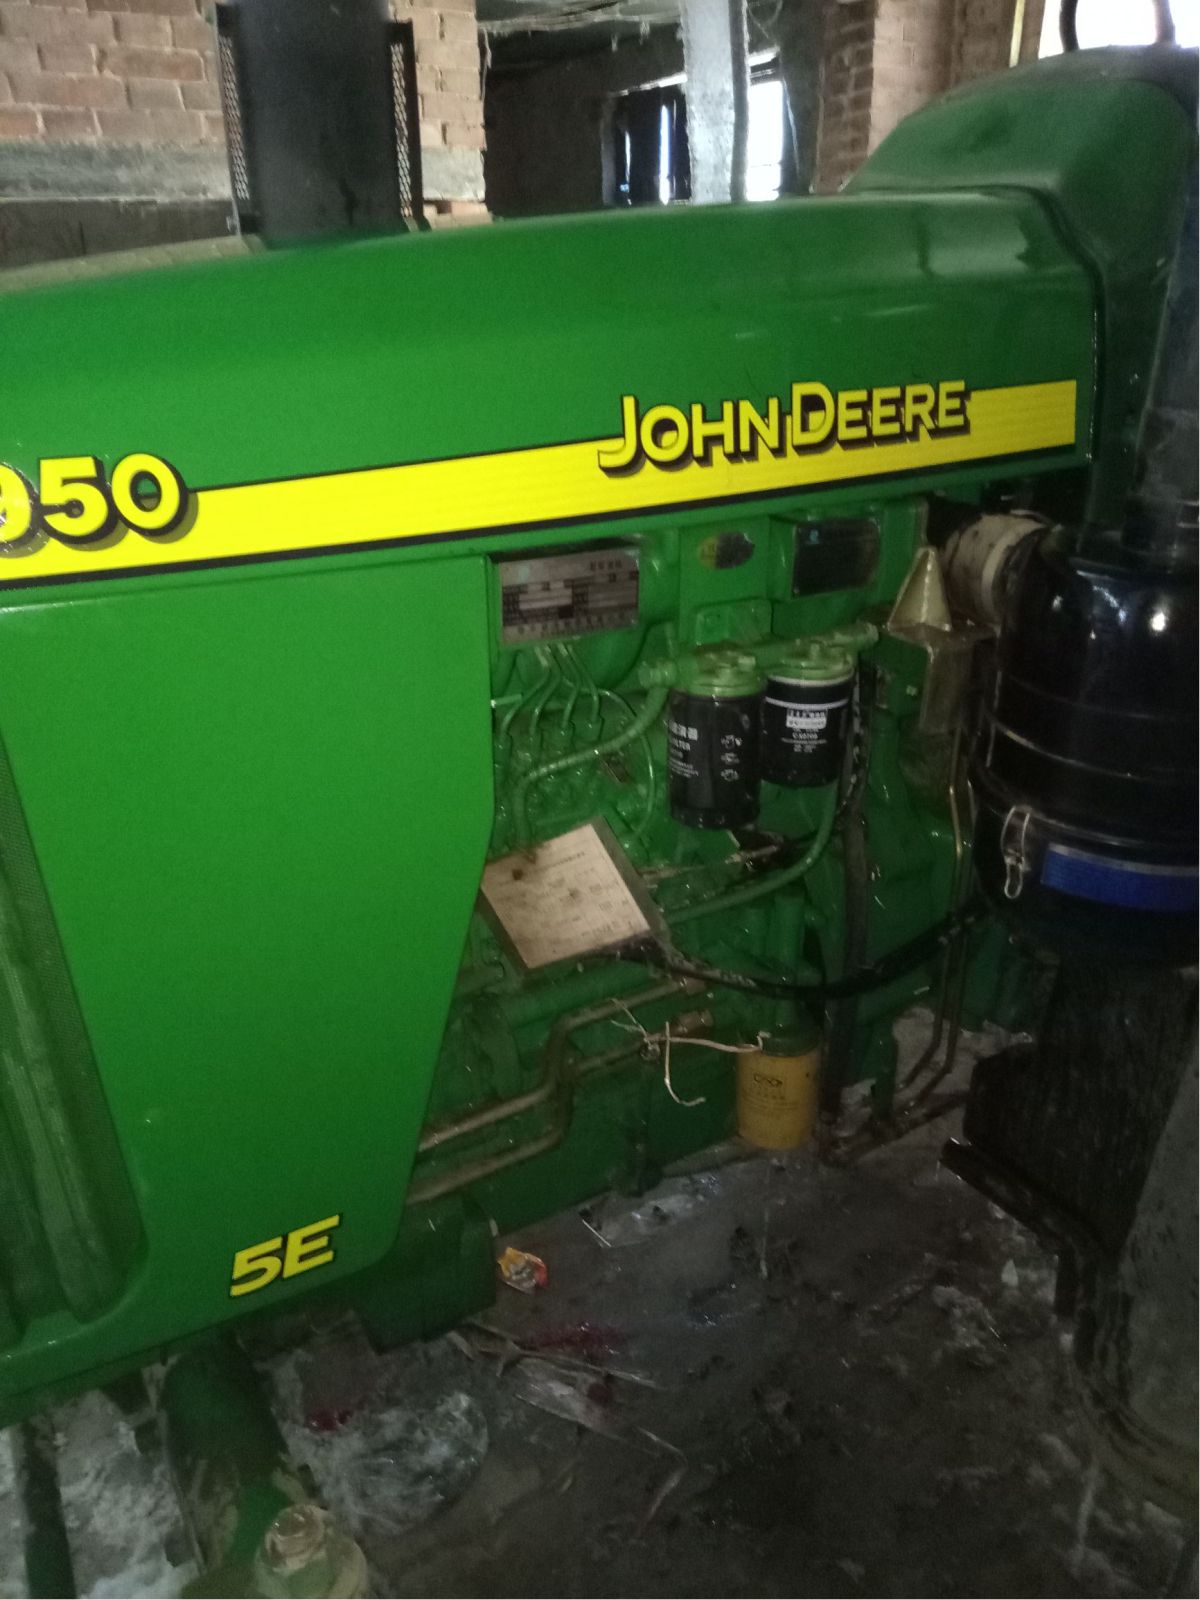 约翰迪尔5-950拖拉机